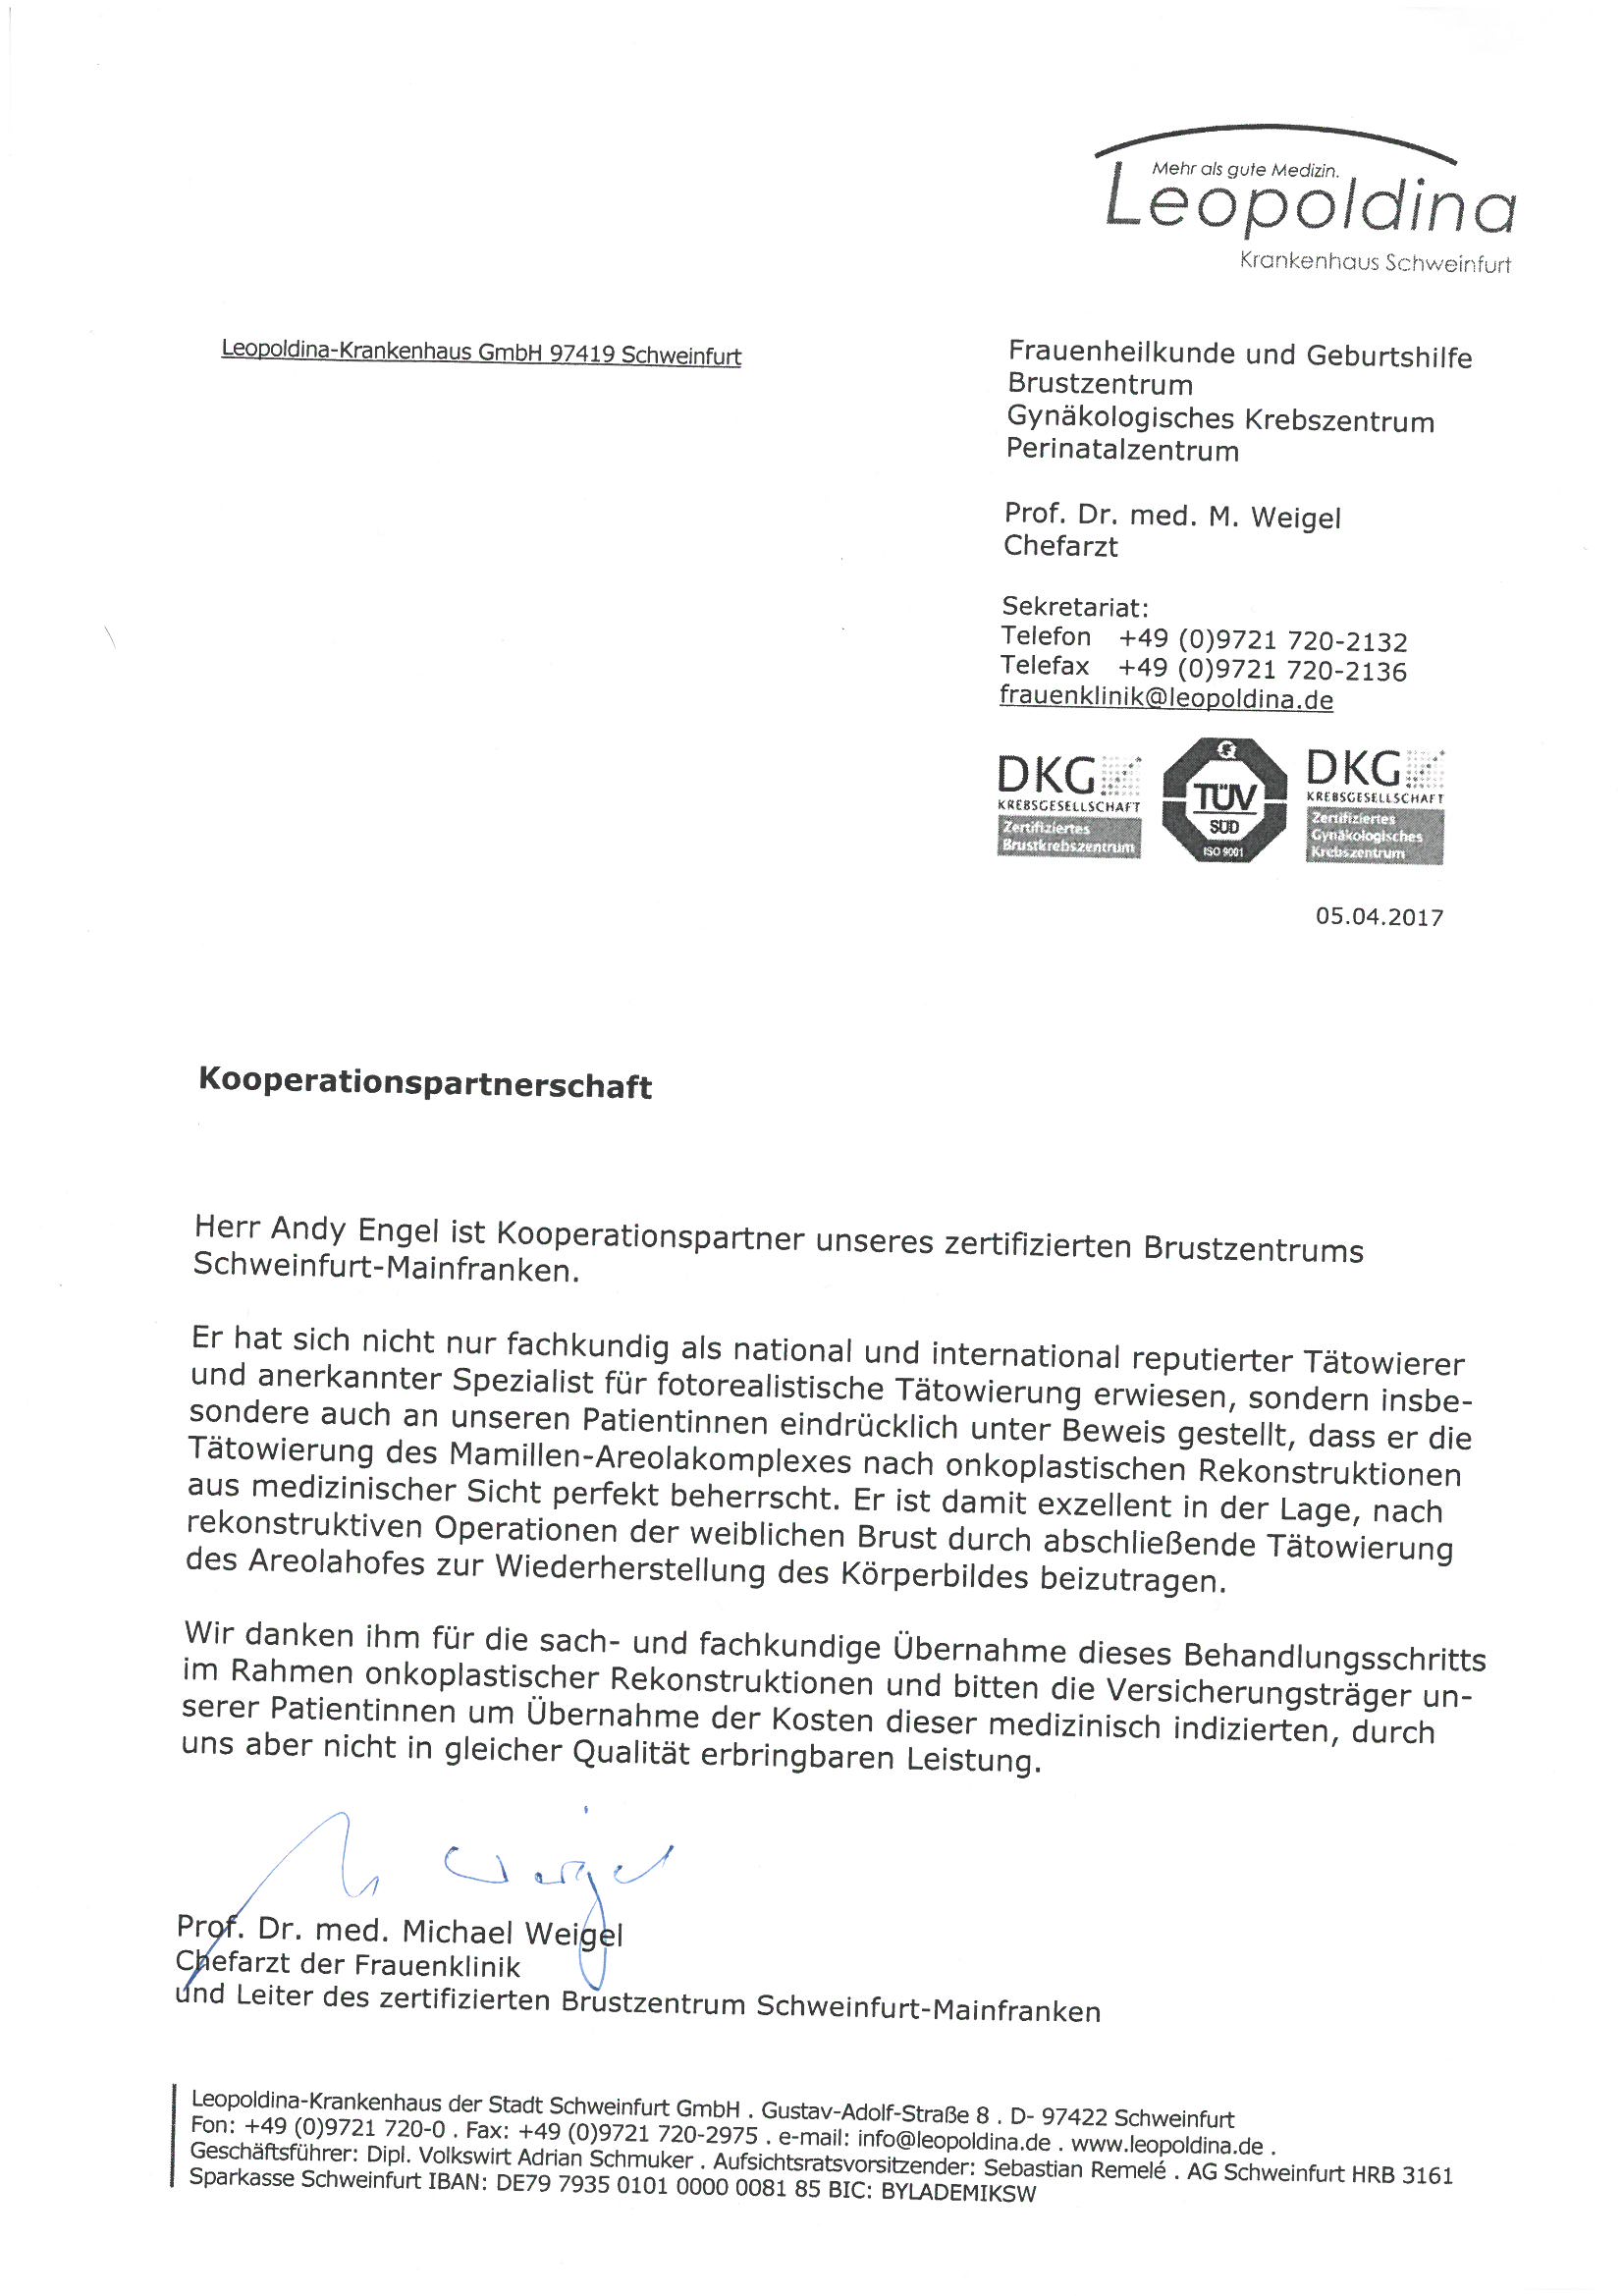 BWK Kooperationsschreiben Leopoldina Krankenhaus Schweinfurt